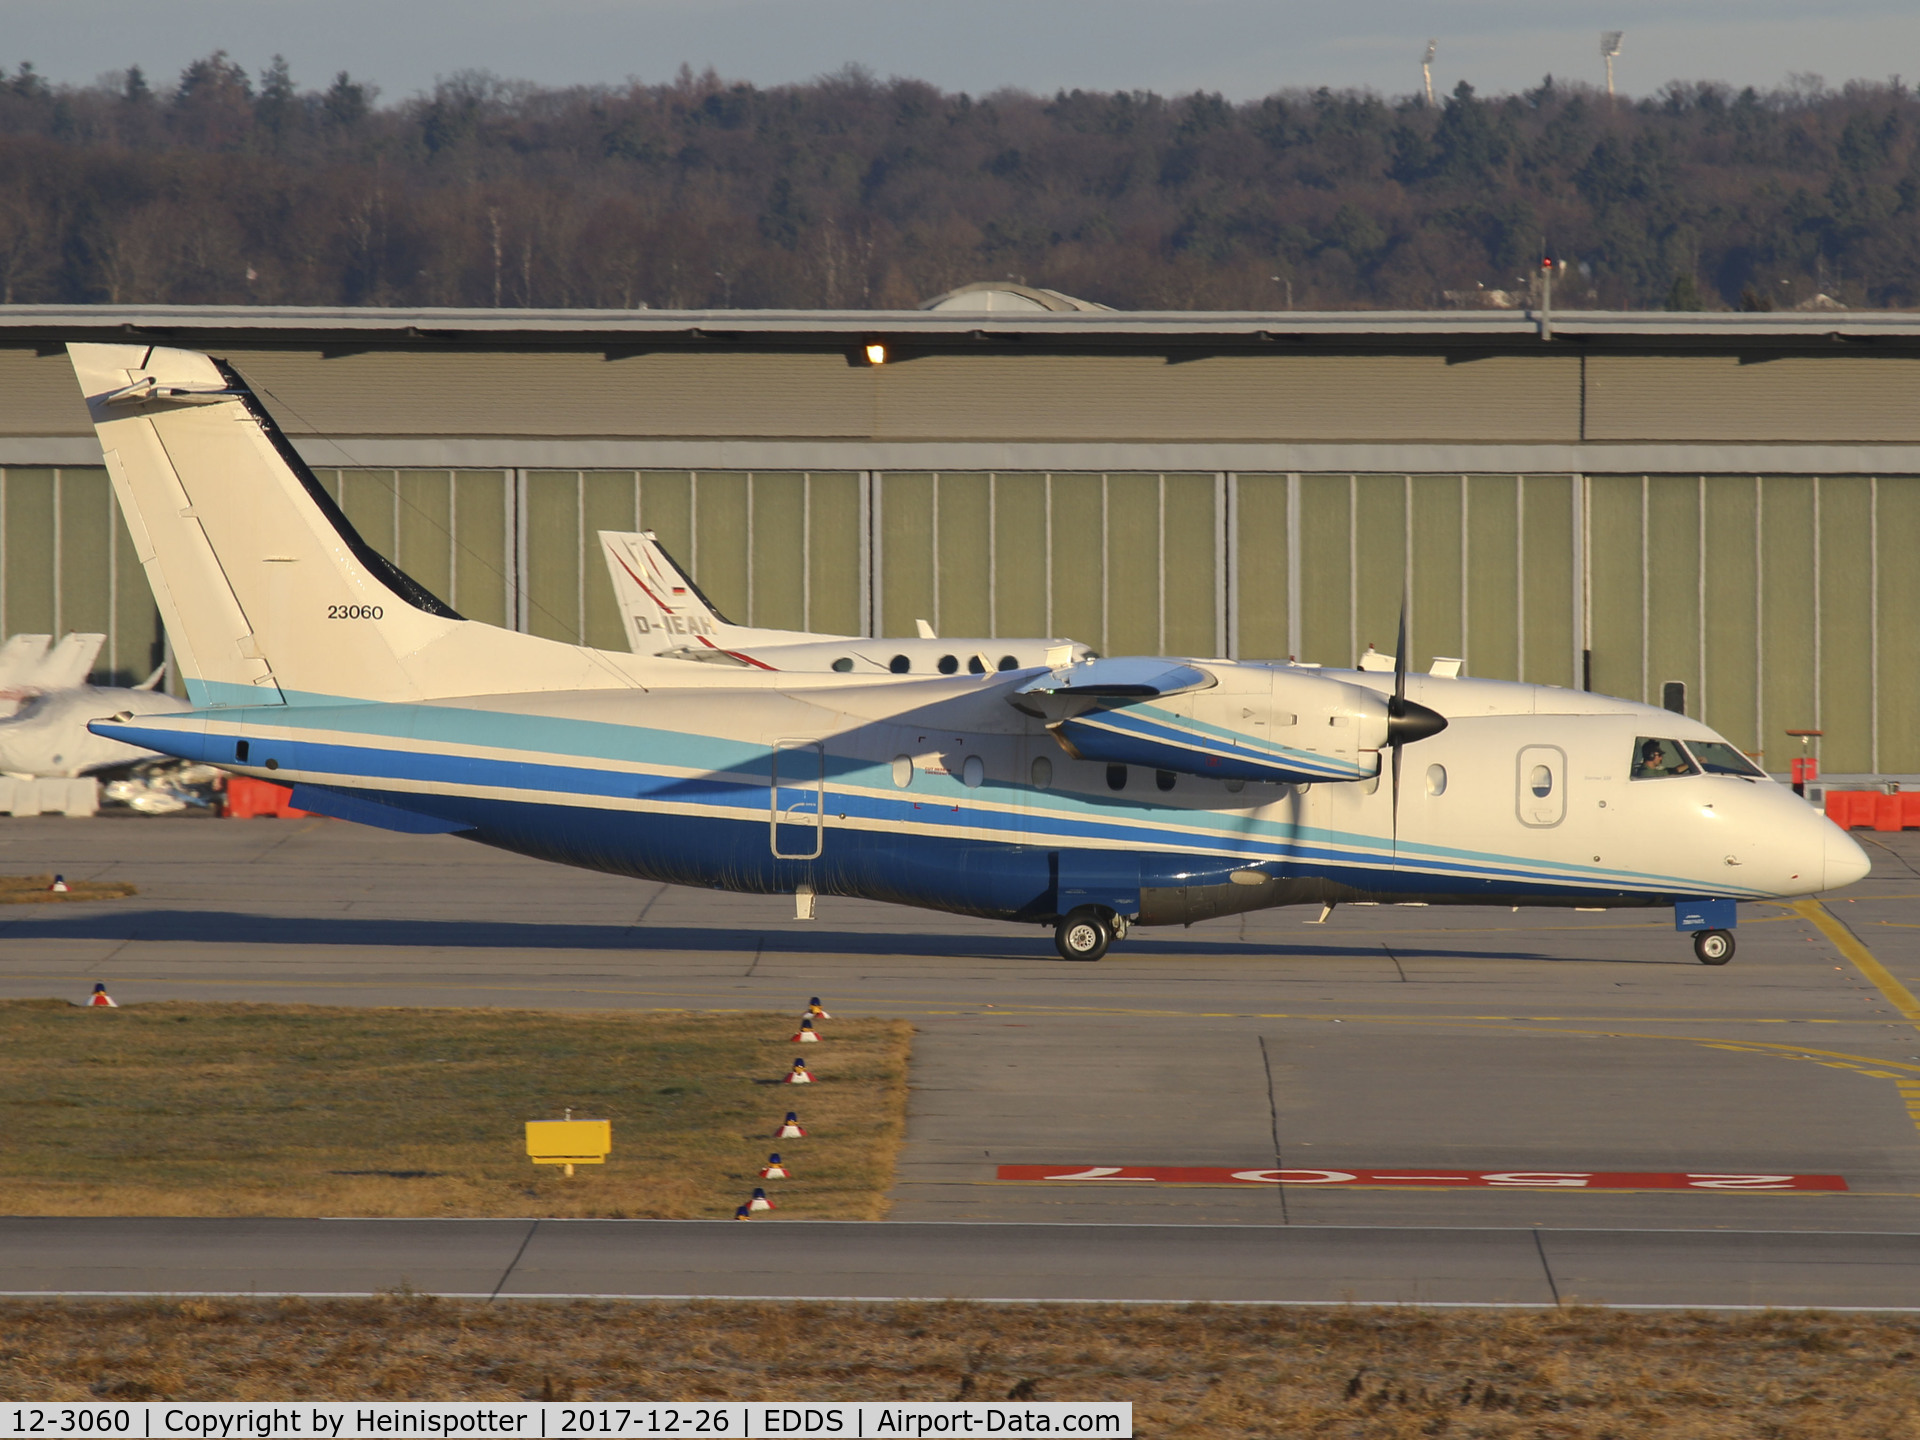 12-3060, 1995 Dornier C-146A Wolfhound (Do328-110) C/N 3060, 12-3060 at Stuttgart Airport.